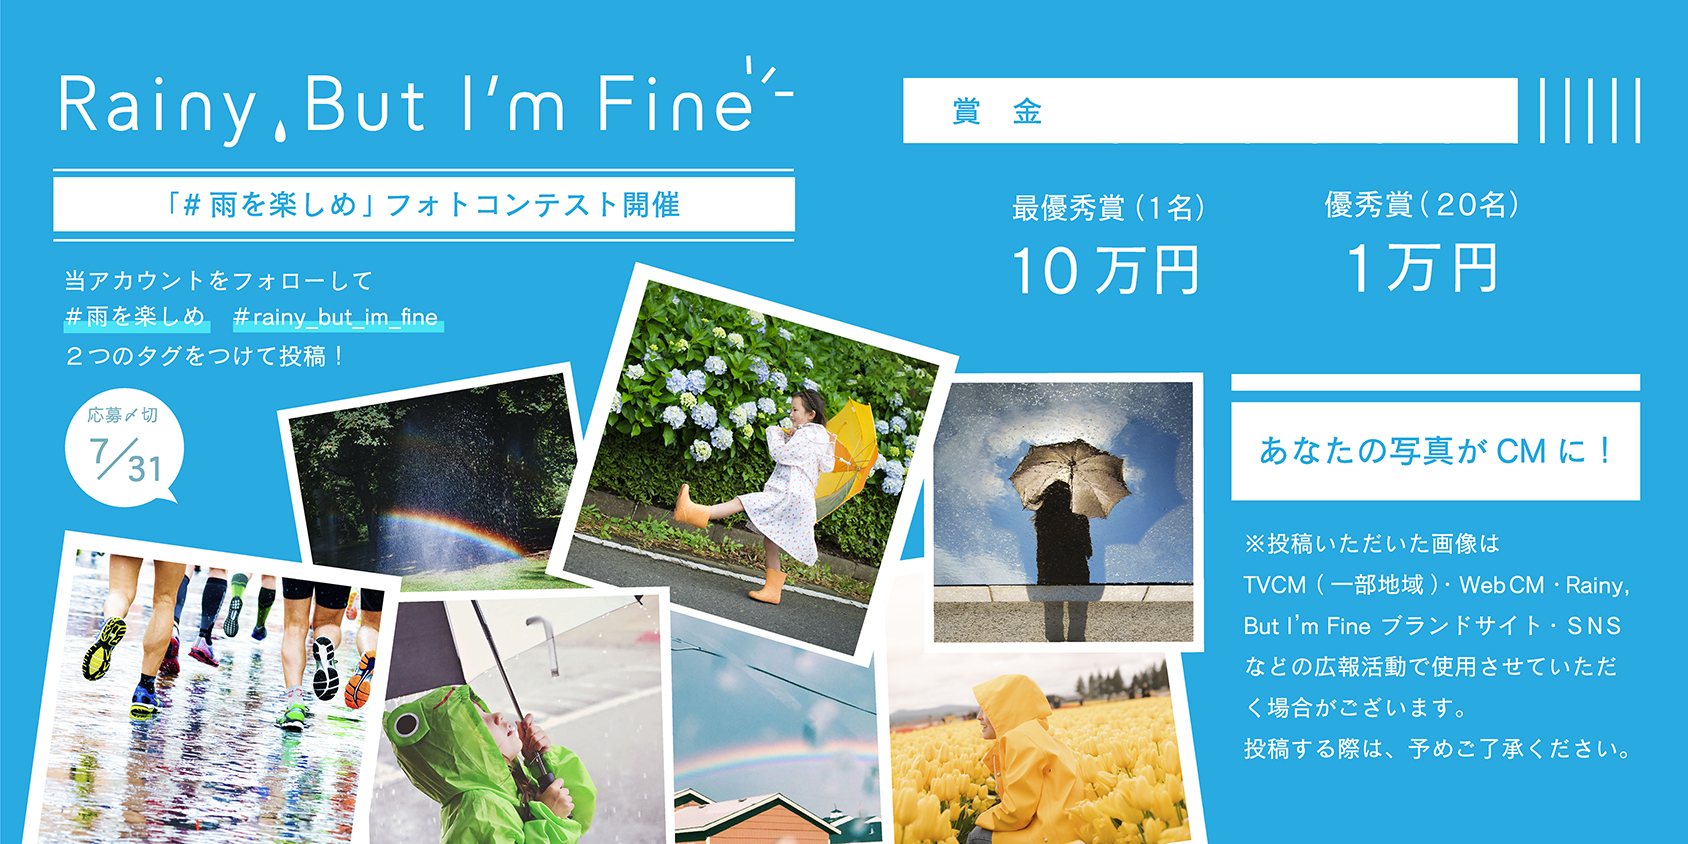 雨が降ったら10万円獲得のチャンス Rainy But I M Fine が雨の日のフォトコンテストをinstagramで7月限定で開催 Strobowritesのプレスリリース